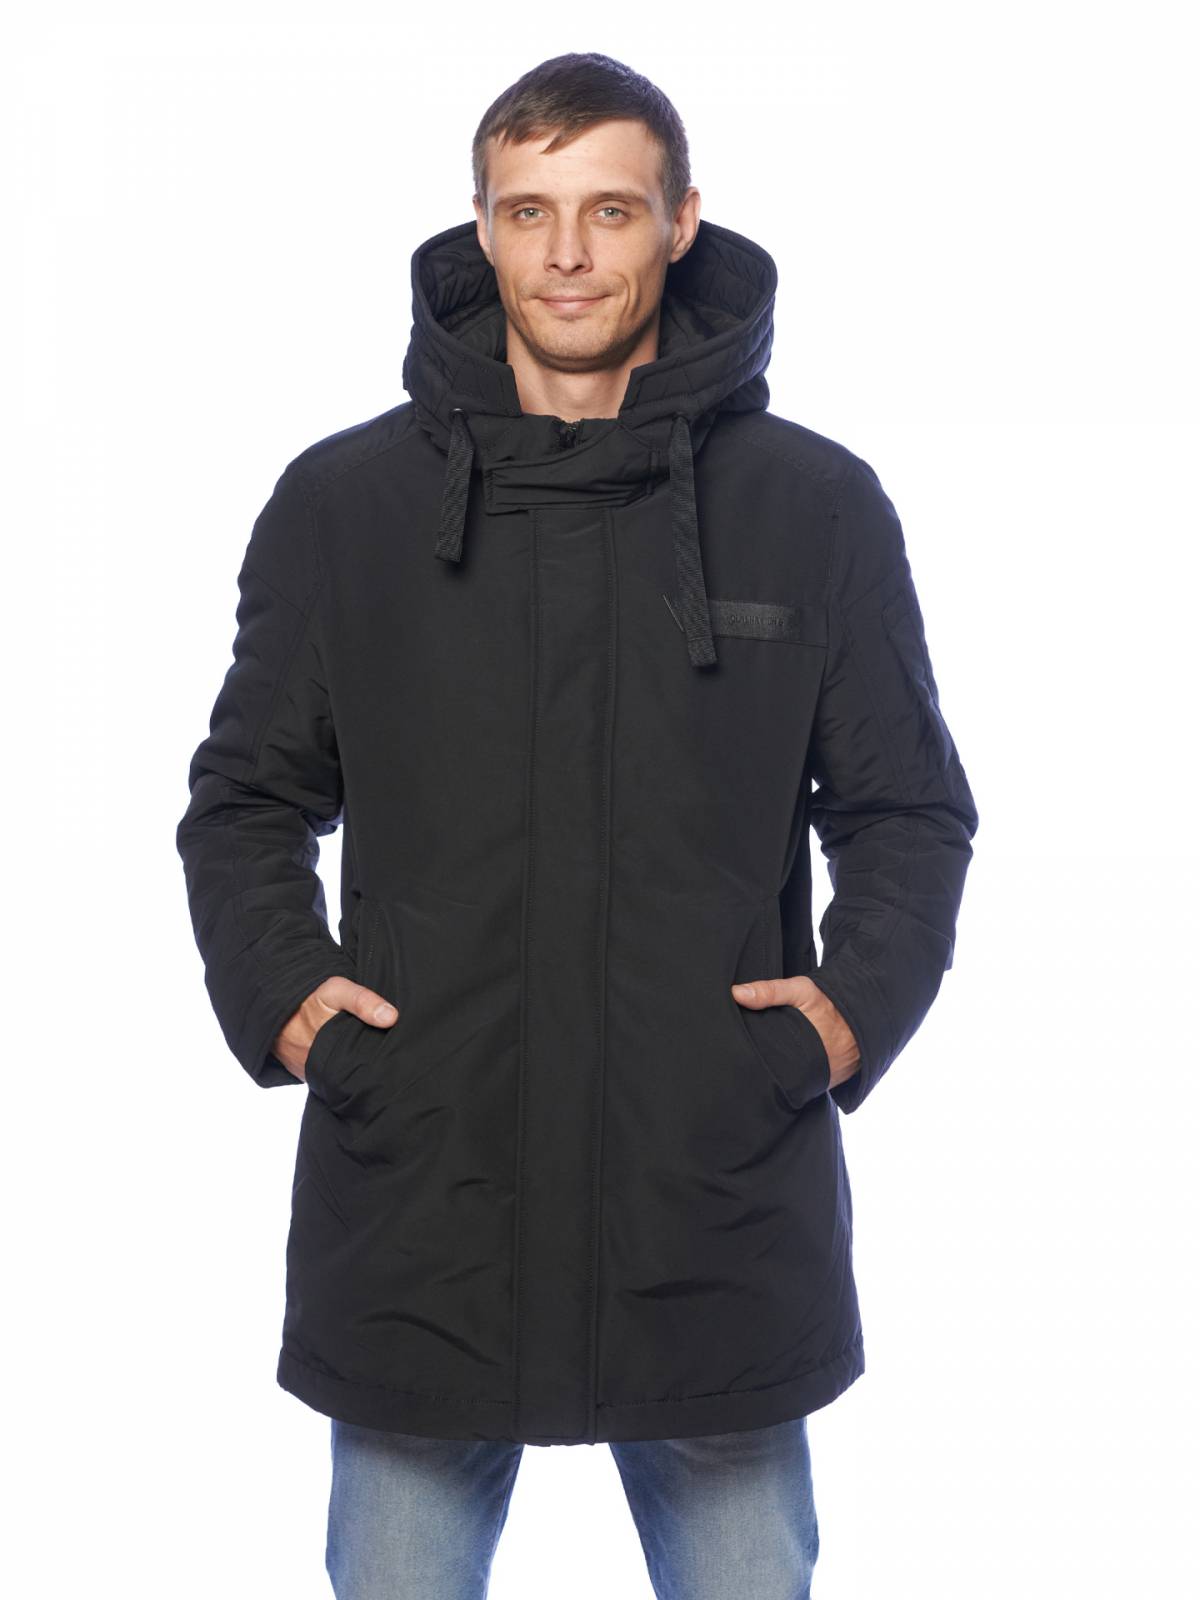 Зимняя куртка мужская Clasna 3543 черная 52 RU